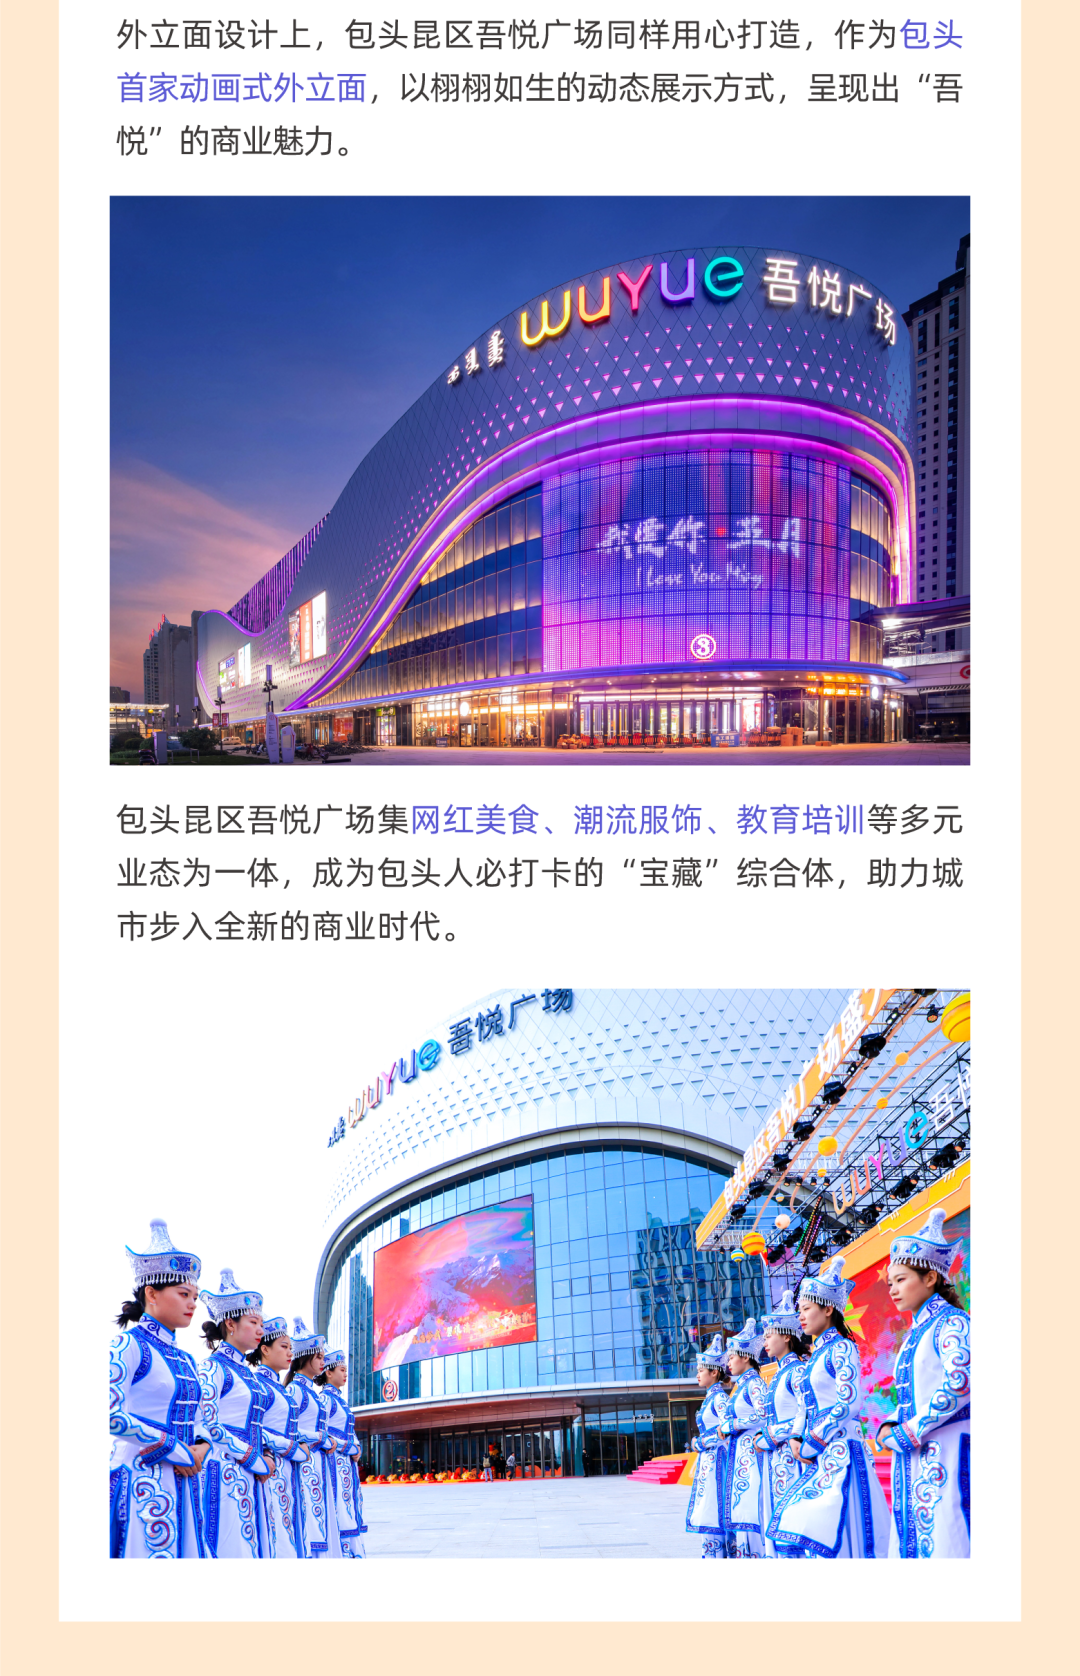 新有吾悦丨这是中国开业的第65-71座吾悦广场